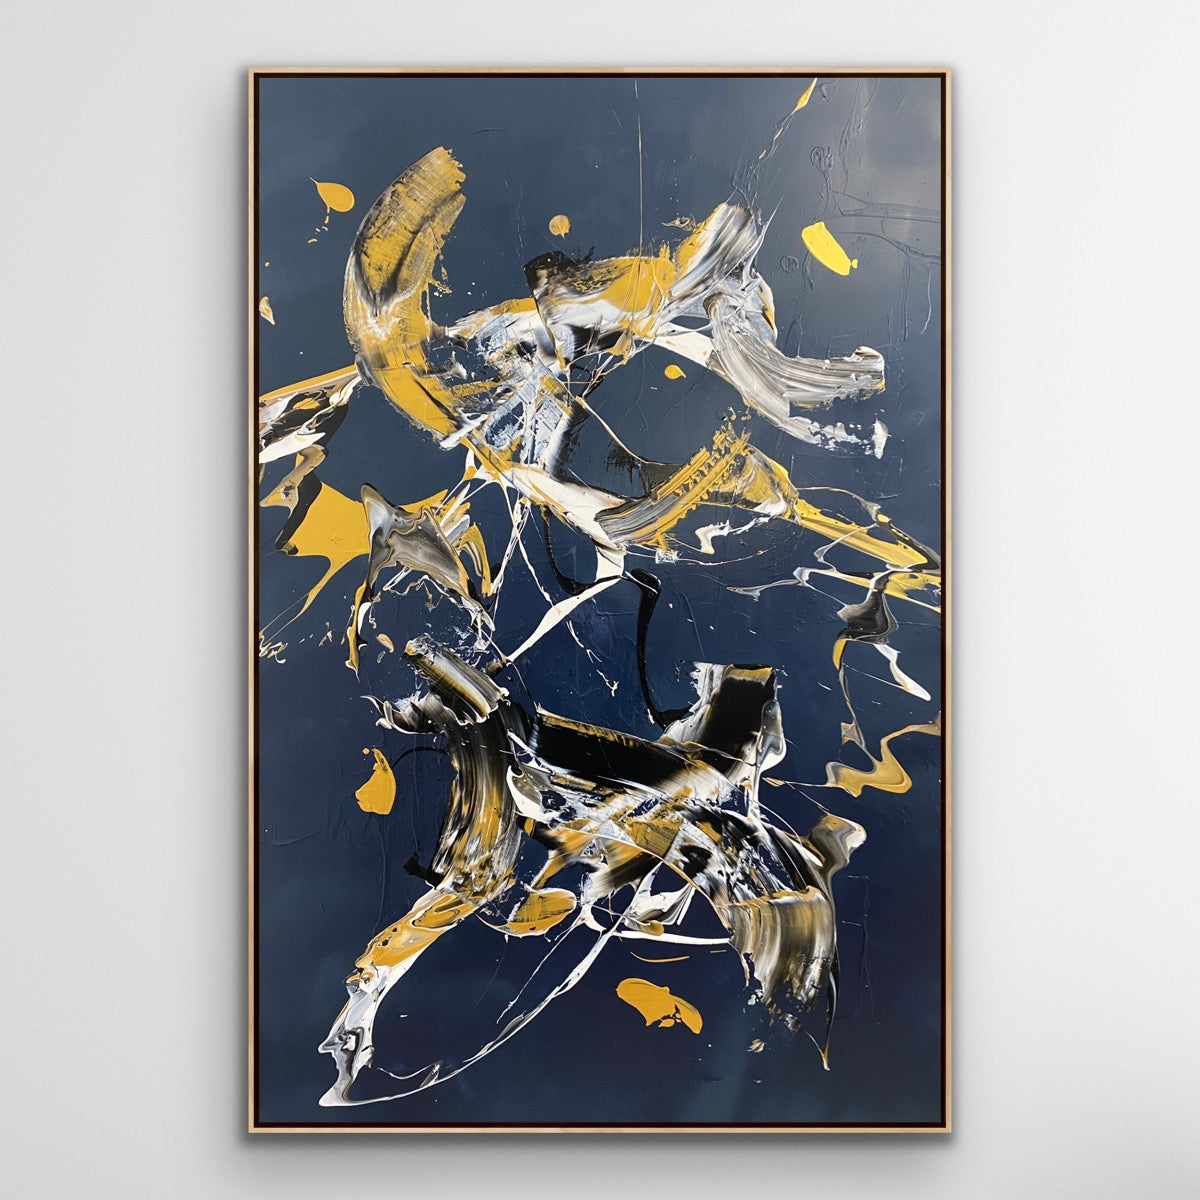 Maleri: "Less Is More #28" 150 x 100 cm